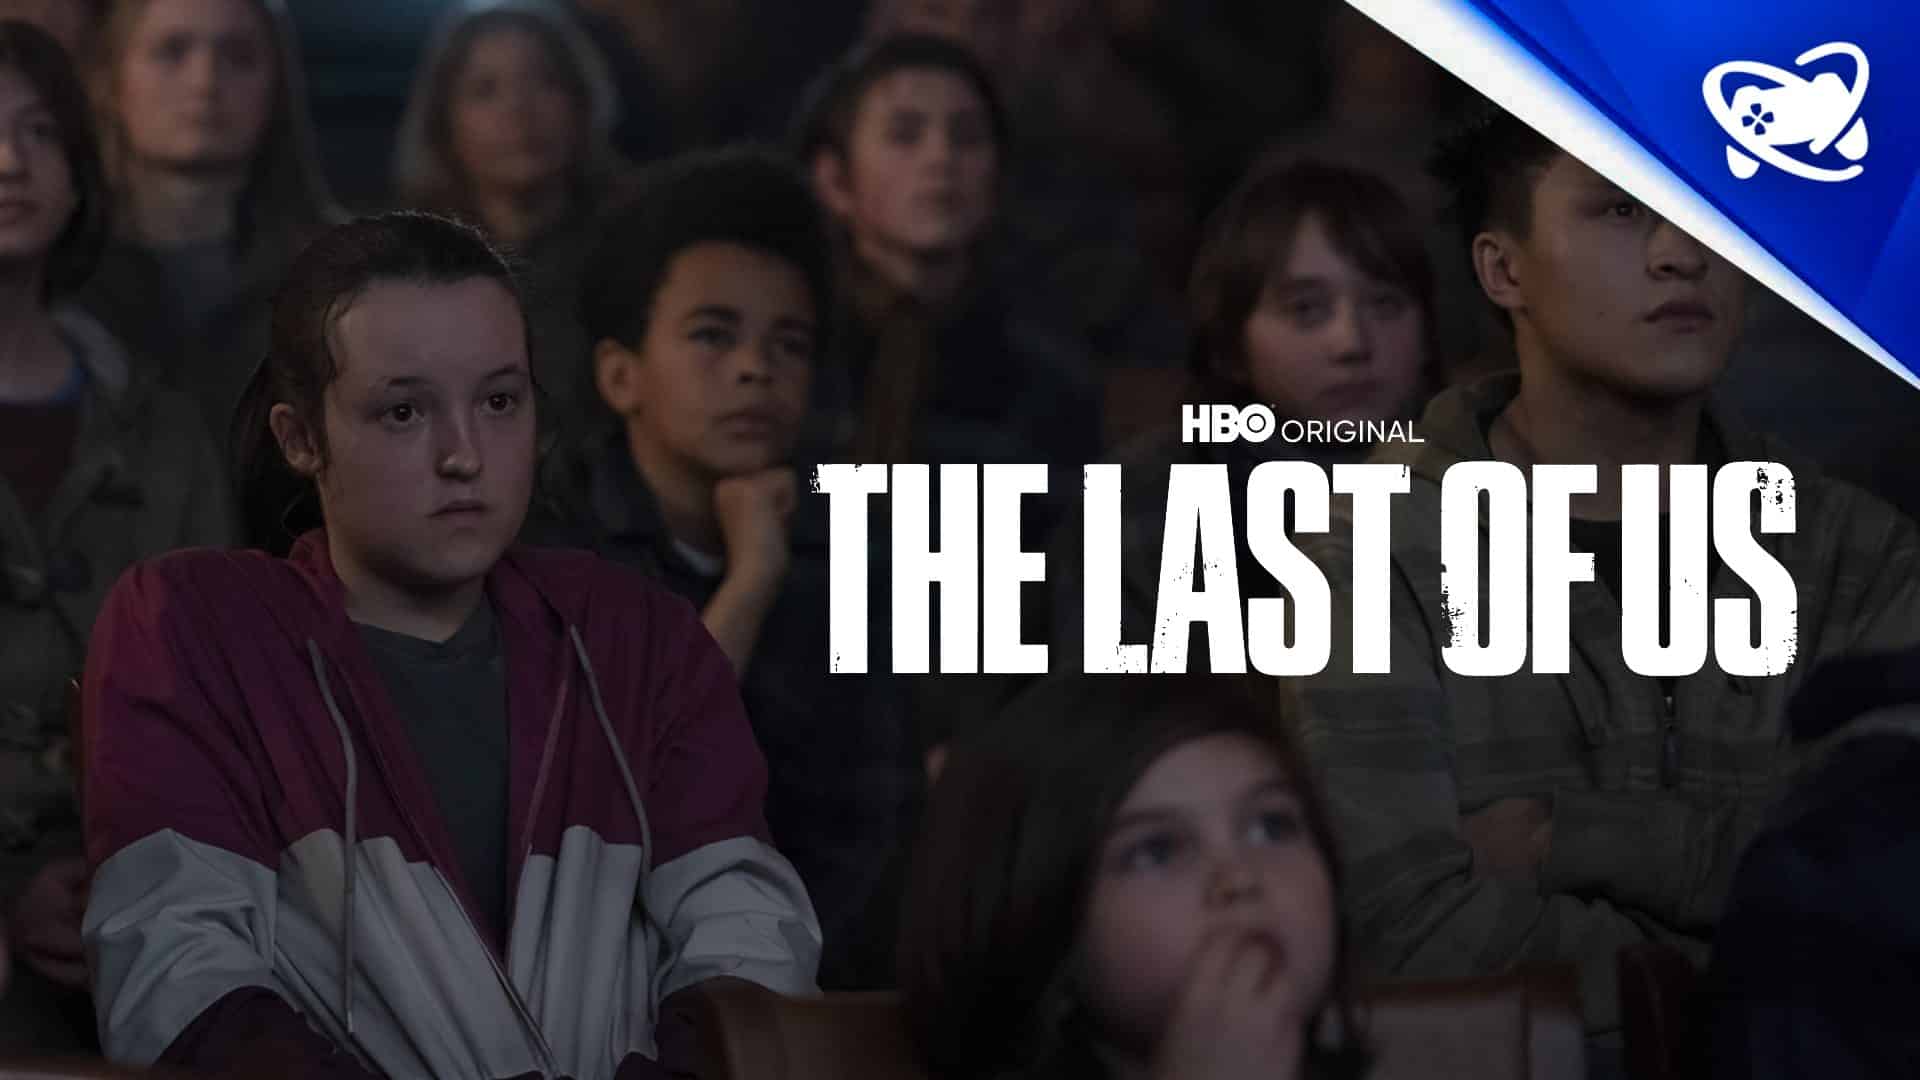 12 easter eggs do sétimo episódio de The Last of Us